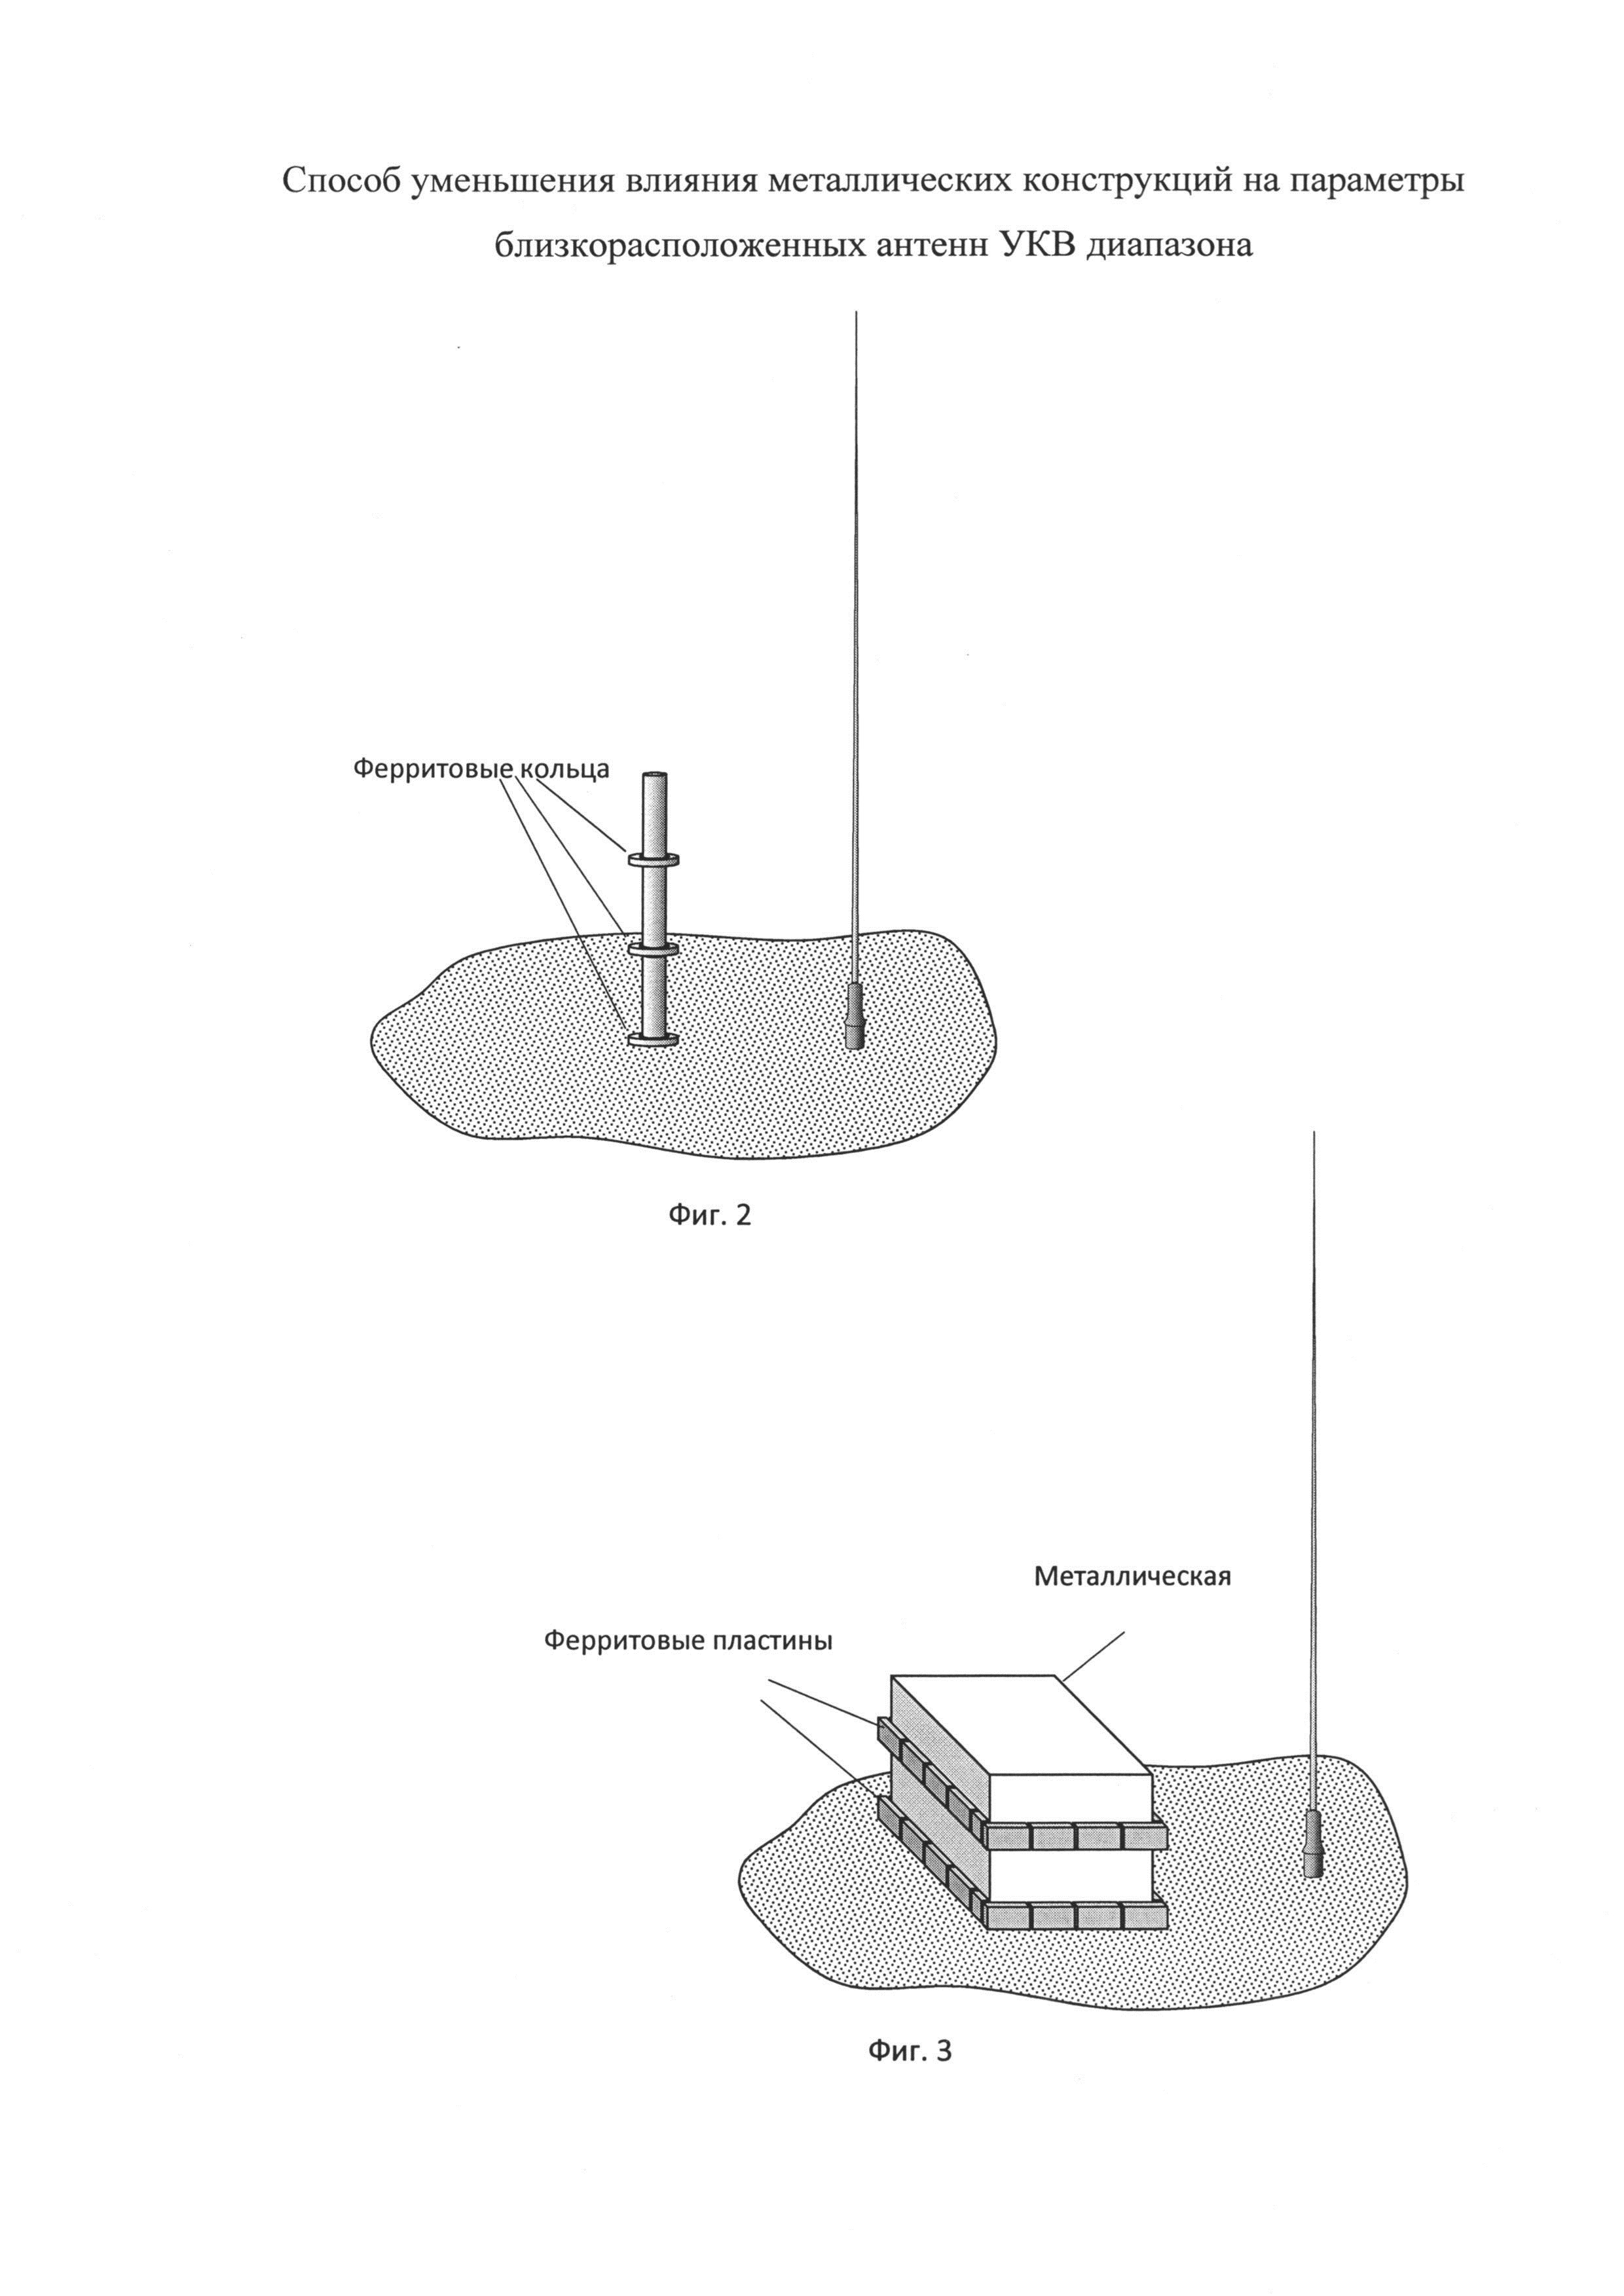 Способ уменьшения влияния металлических конструкций на параметры близкорасположенных антенн УКВ-диапазона